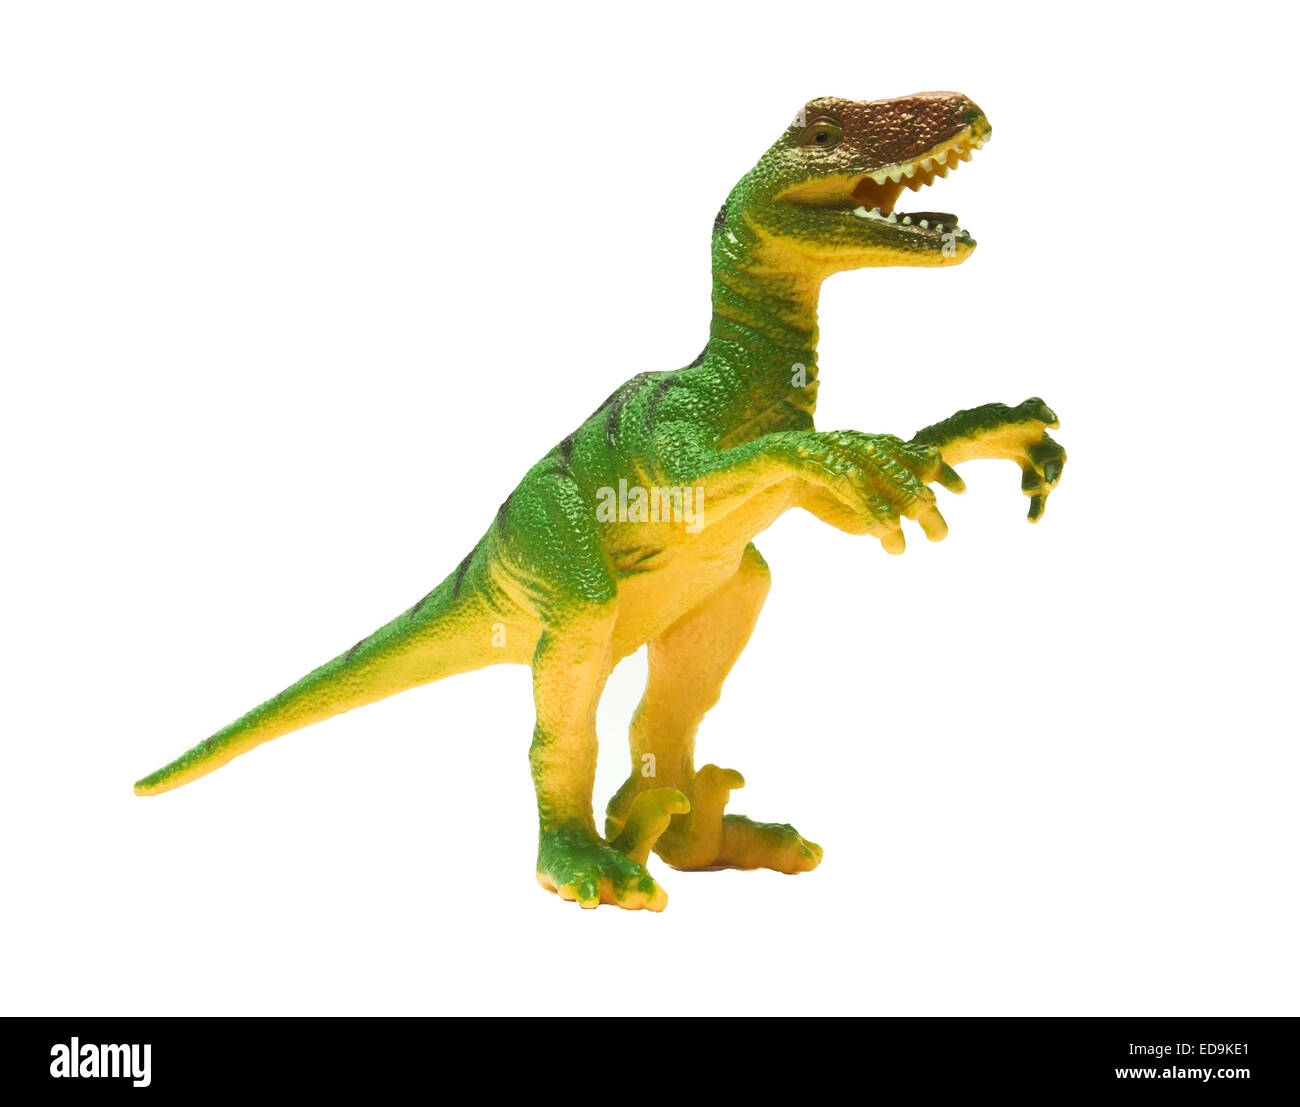 Spielzeug Dinosaurier isoliert auf weißem Hintergrund Stockfoto